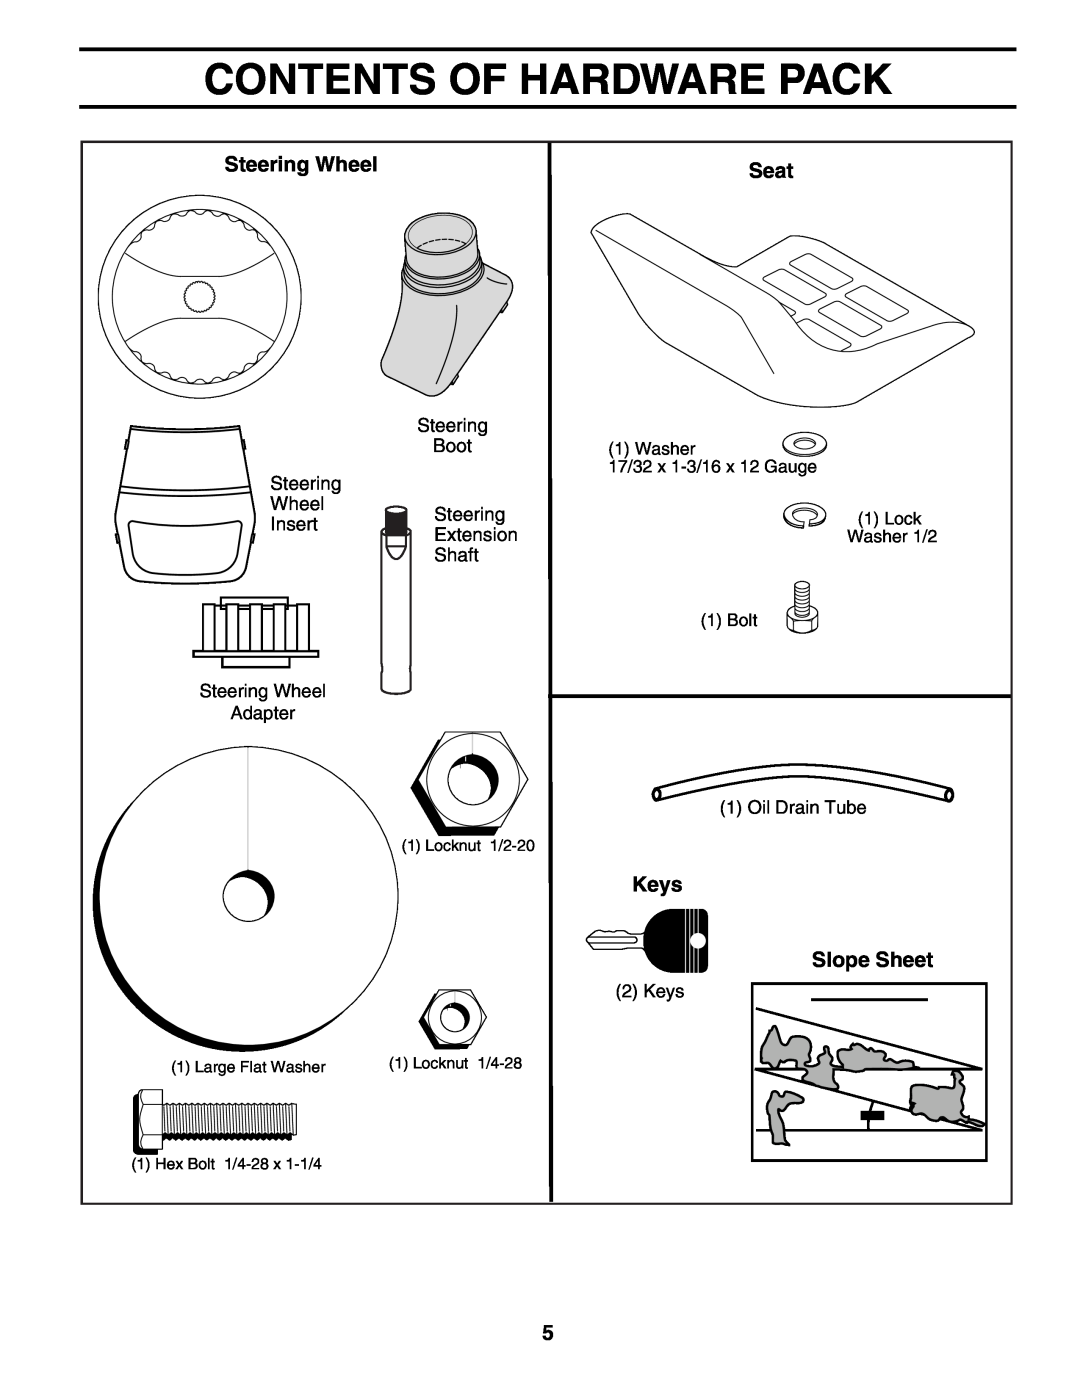 Poulan 192087 manual Contents Of Hardware Pack, Steering Wheel, Seat, Keys, Slope Sheet 